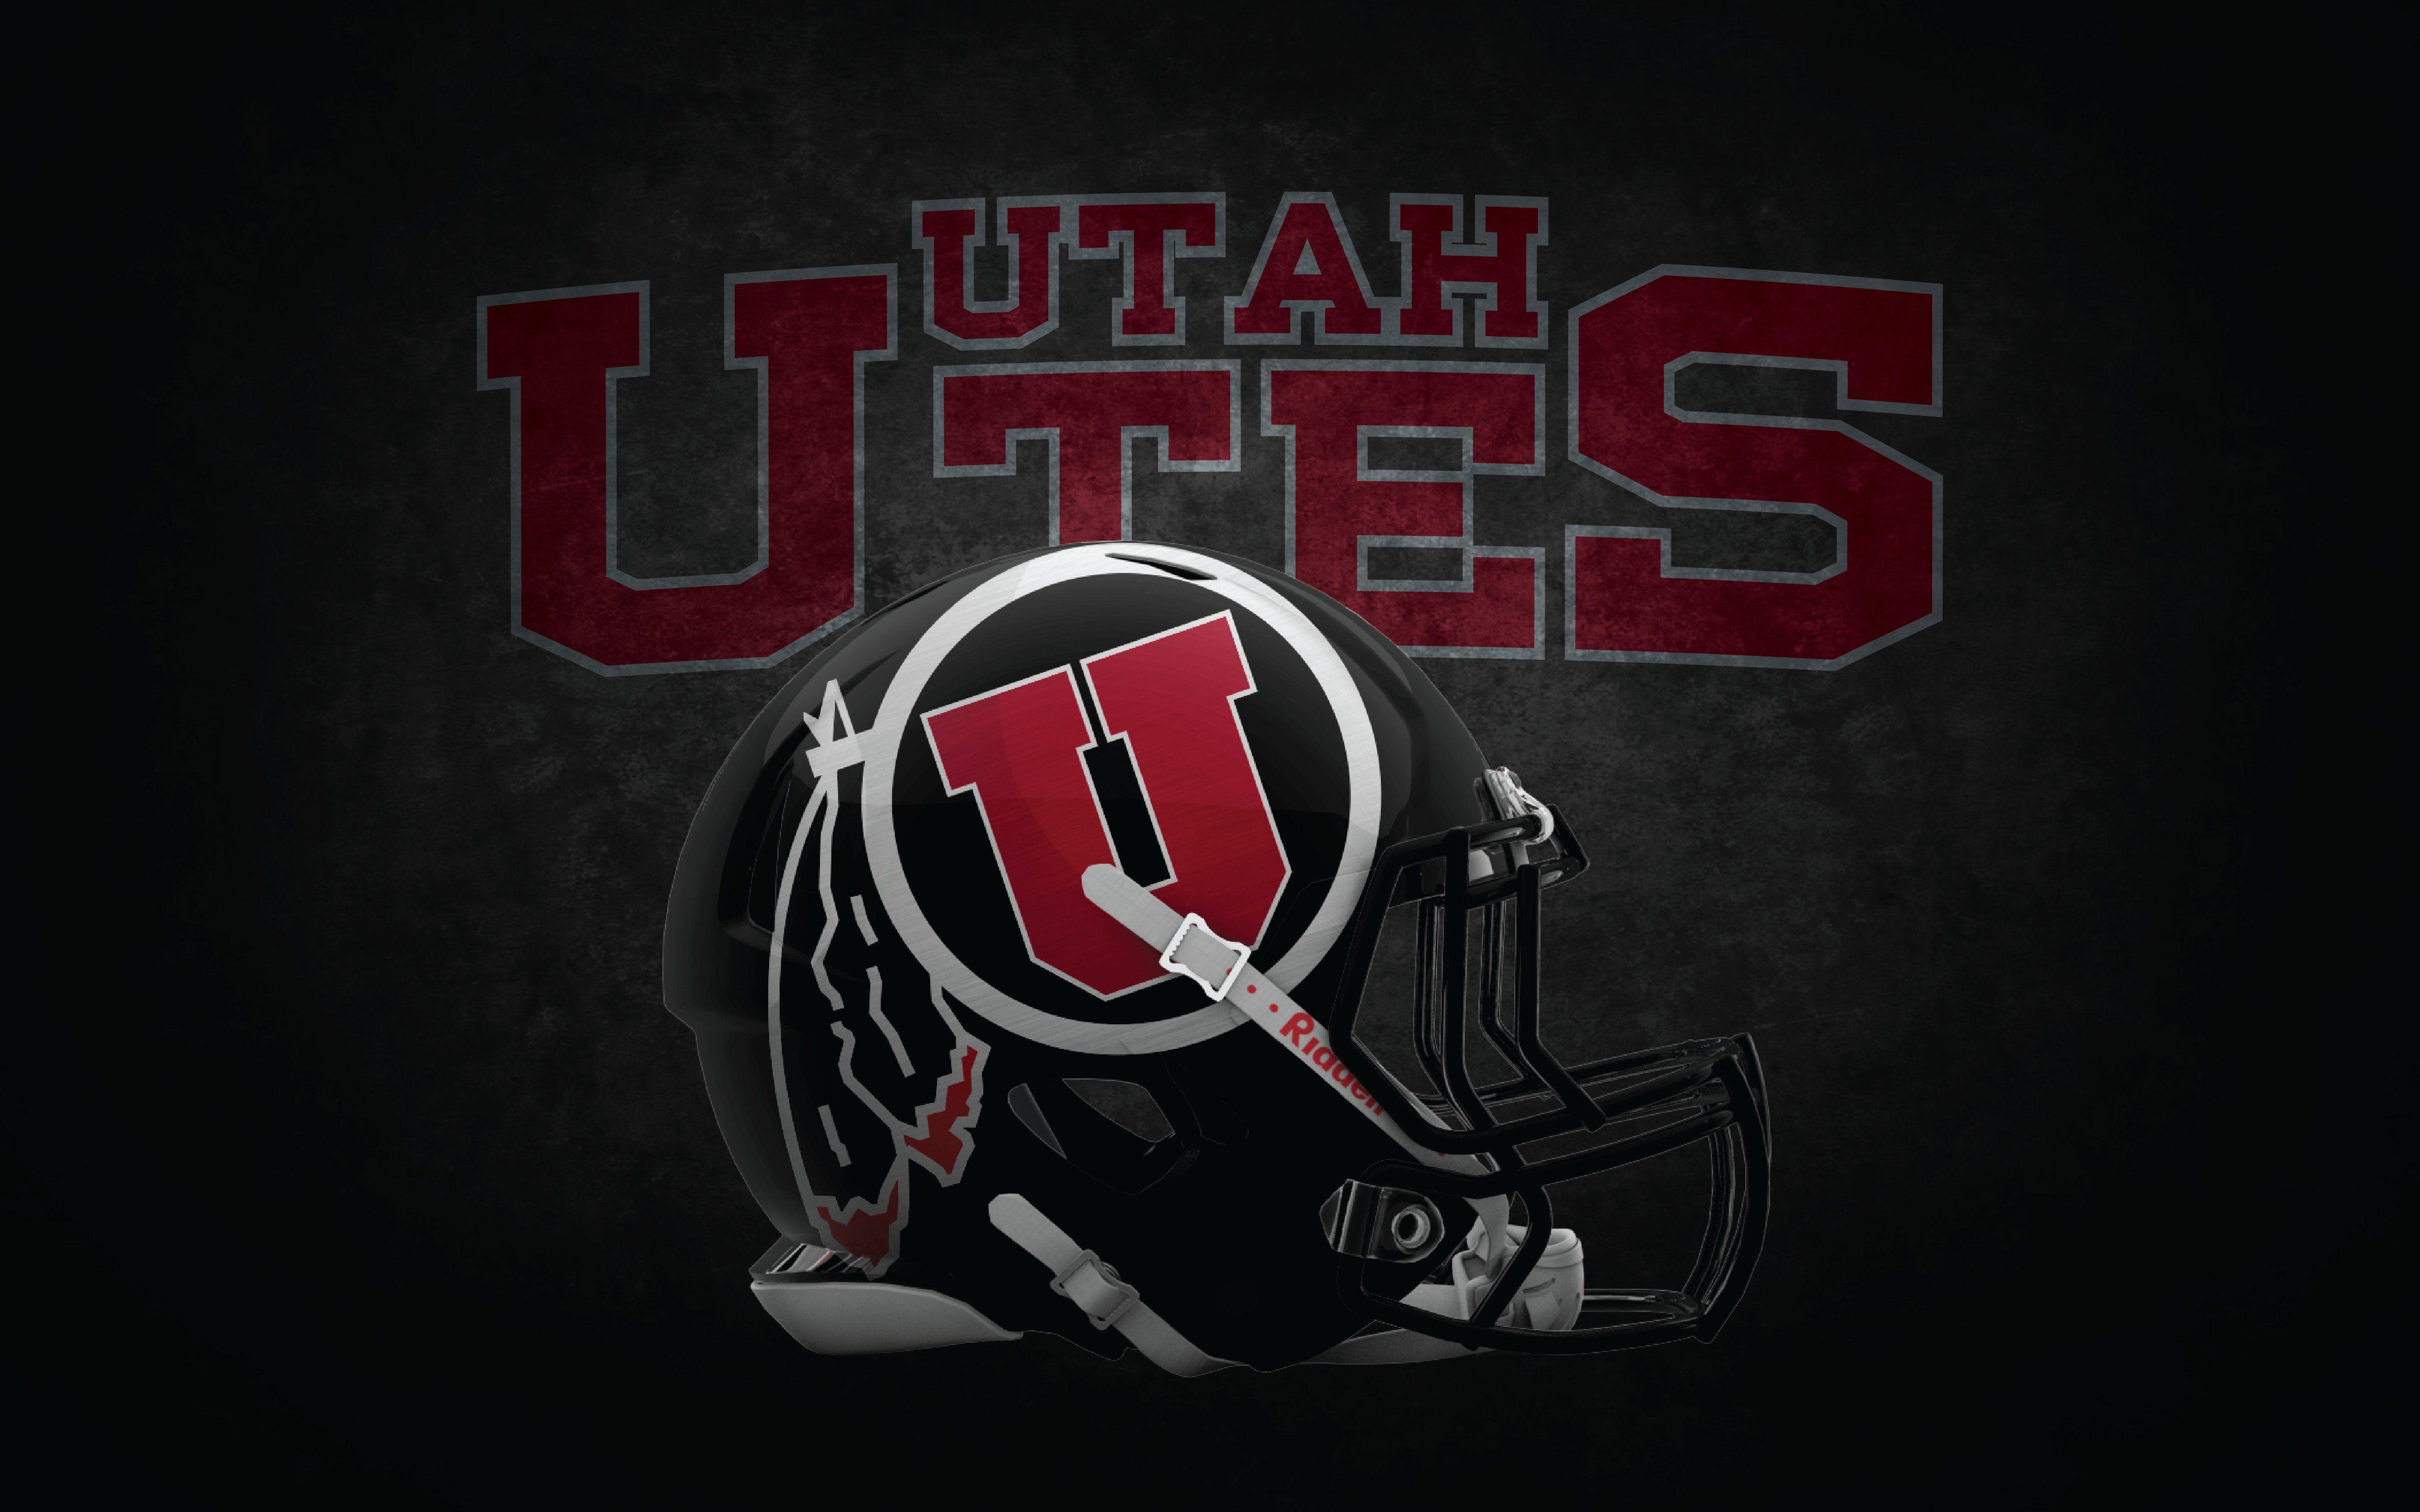 Utah Utes Wallpaper. UTAH UTES college football wallpaper